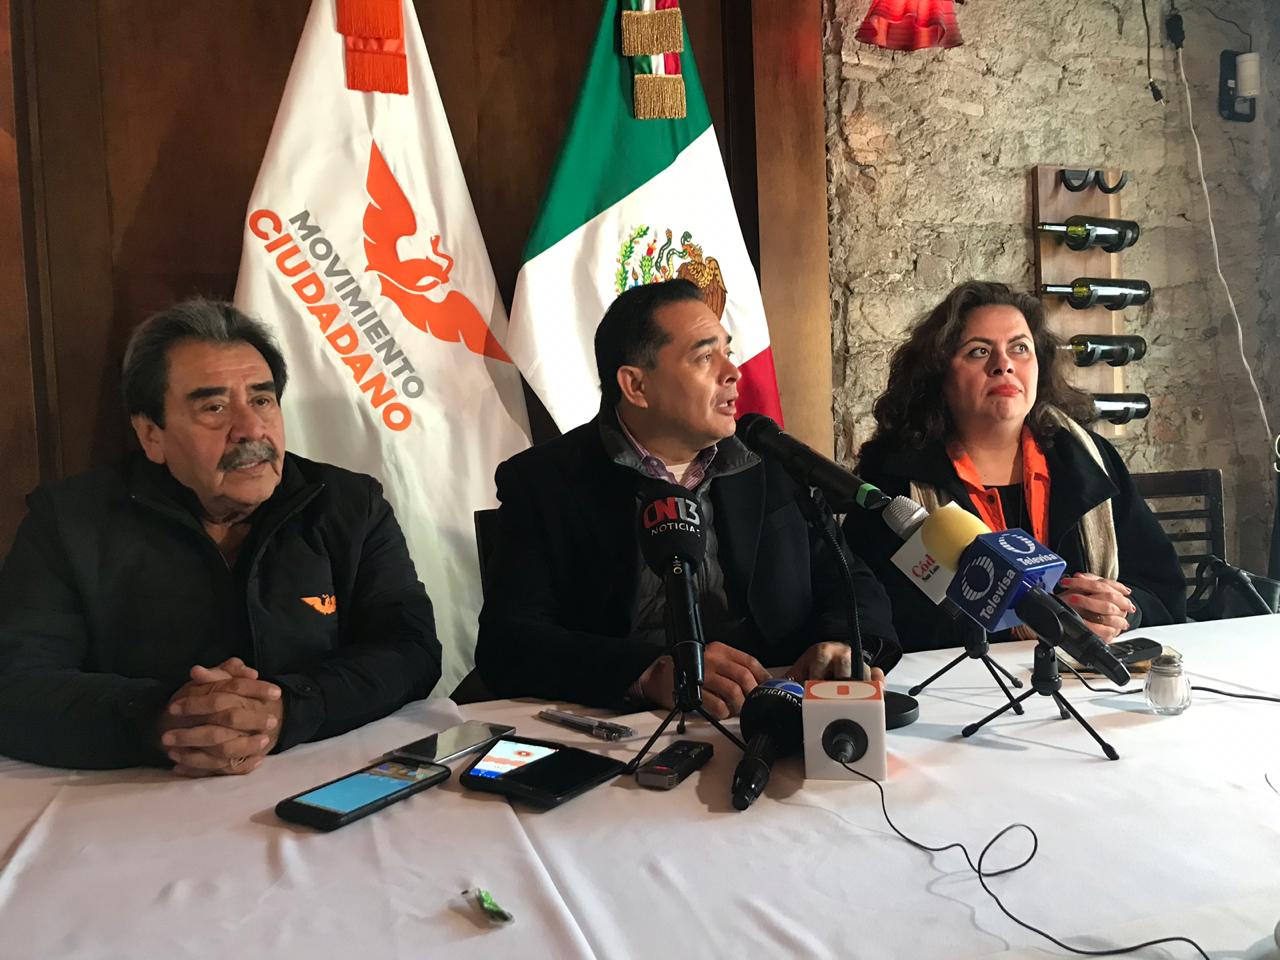  Govea Arcos se reeligirá por tercera vez como dirigente de Movimiento Ciudadano